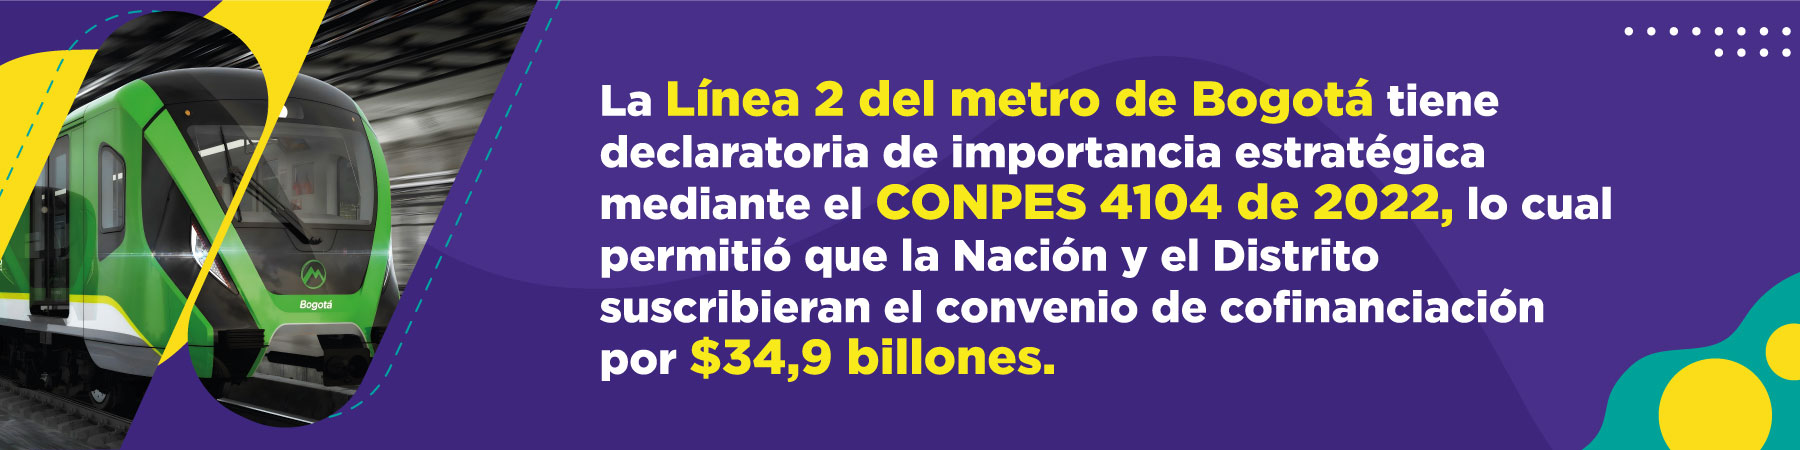 Estructuración integral de la Línea 2 del metro de Bogotá